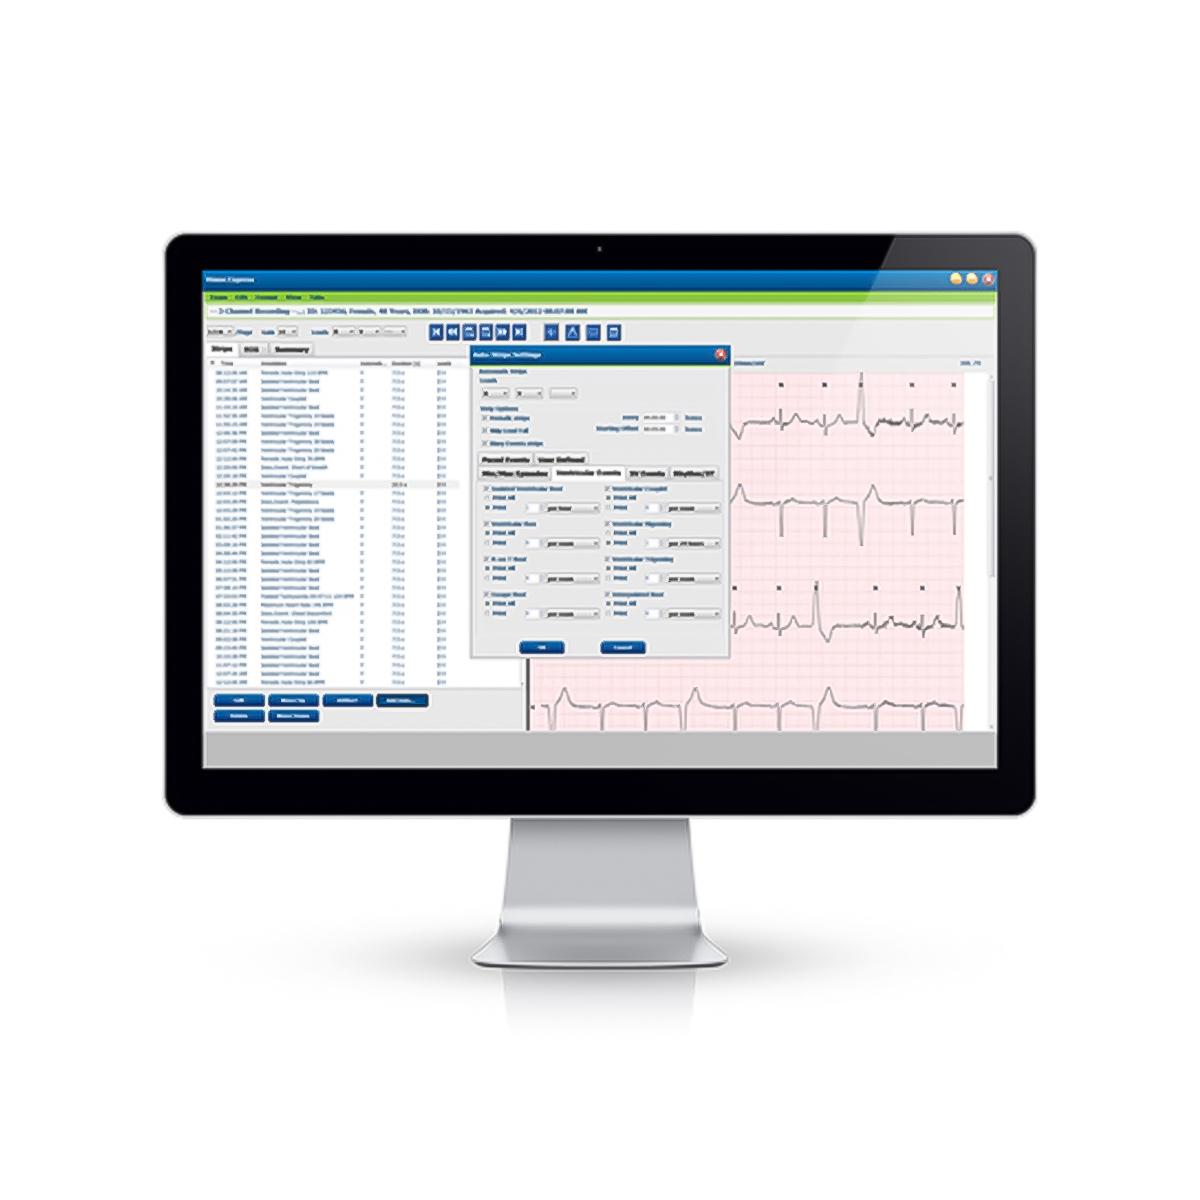 Sistema di analisi Holter Vision™ Express visualizzato sul monitor di un computer